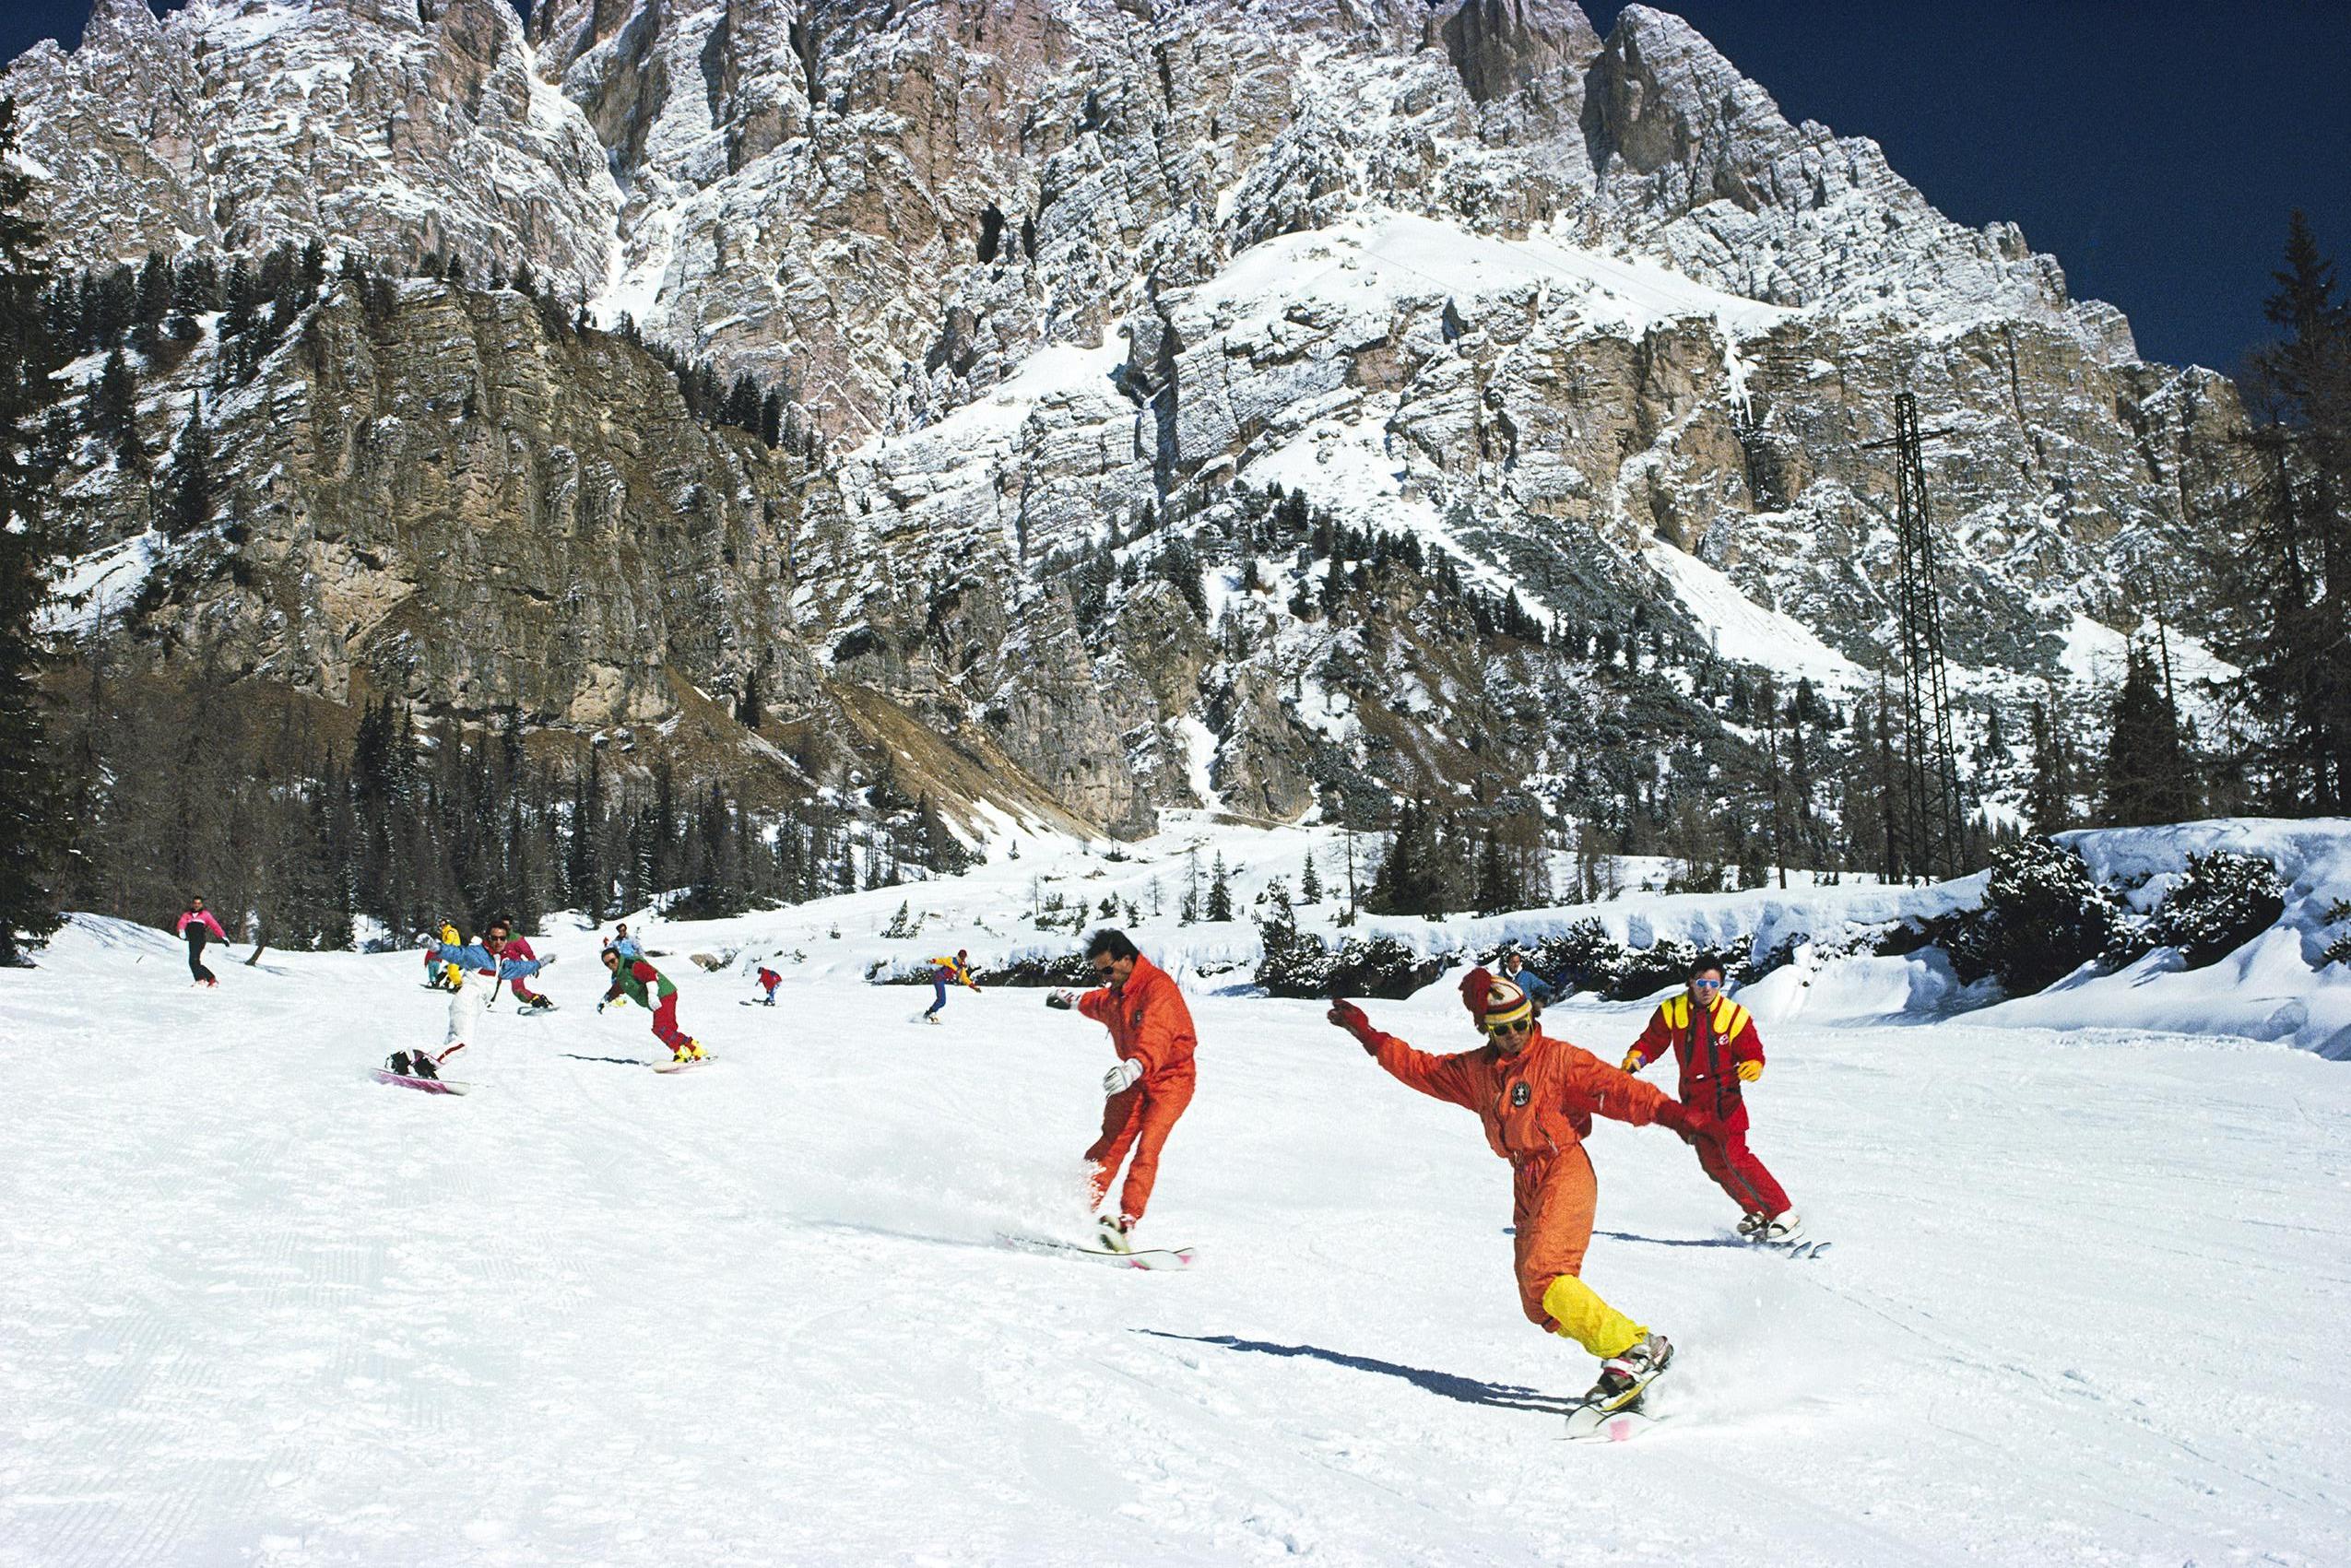 Slim Aarons - Cortina d'Ampezzo - Nachlassgestempelte Ausgabe 

Snowboarding in Cortina d'Ampezzo, März 1988 (Foto von Slim Aarons). 


Dieses Foto verkörpert den Reisestil und den Glamour der Reichen und Berühmten dieser Zeit, der von Aarons